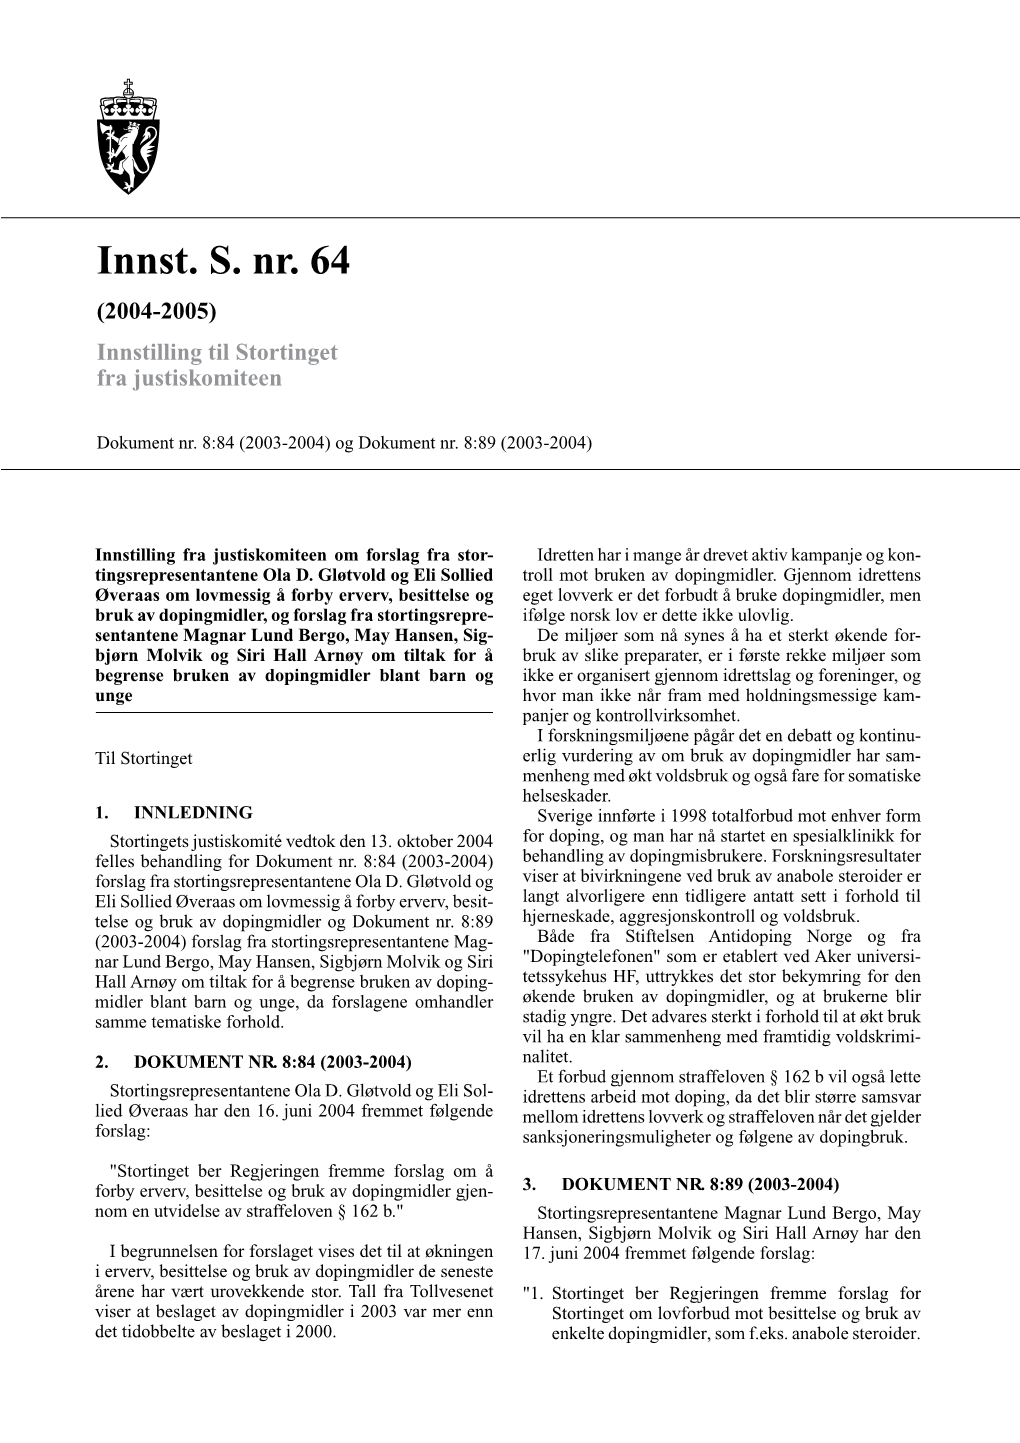 Innst. S. Nr. 64 (2004-2005) Innstilling Til Stortinget Fra Justiskomiteen